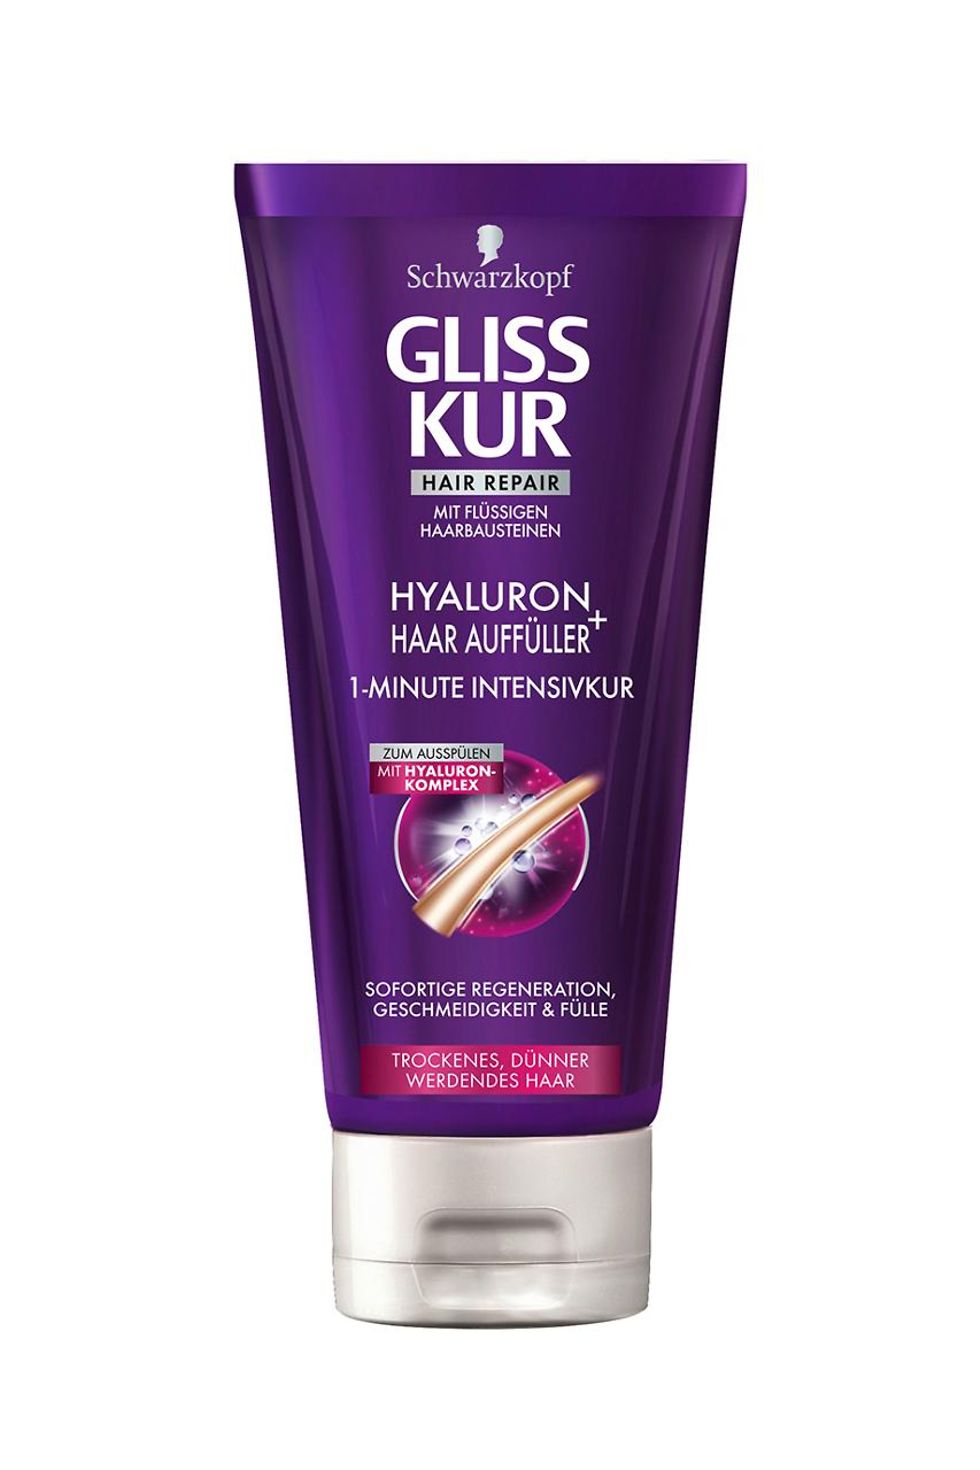 Gliss Kur Hyaluron + Haar Auffüller 1-Minute Intensivkur